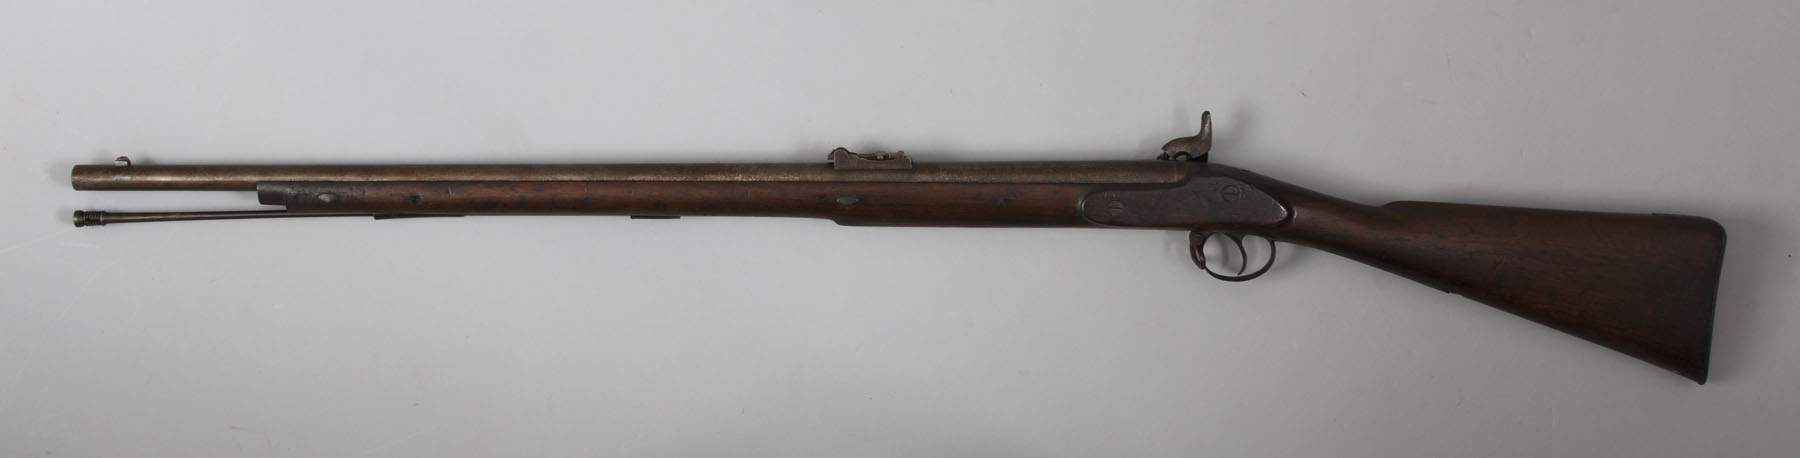 Civil War Period Enfield Rifle